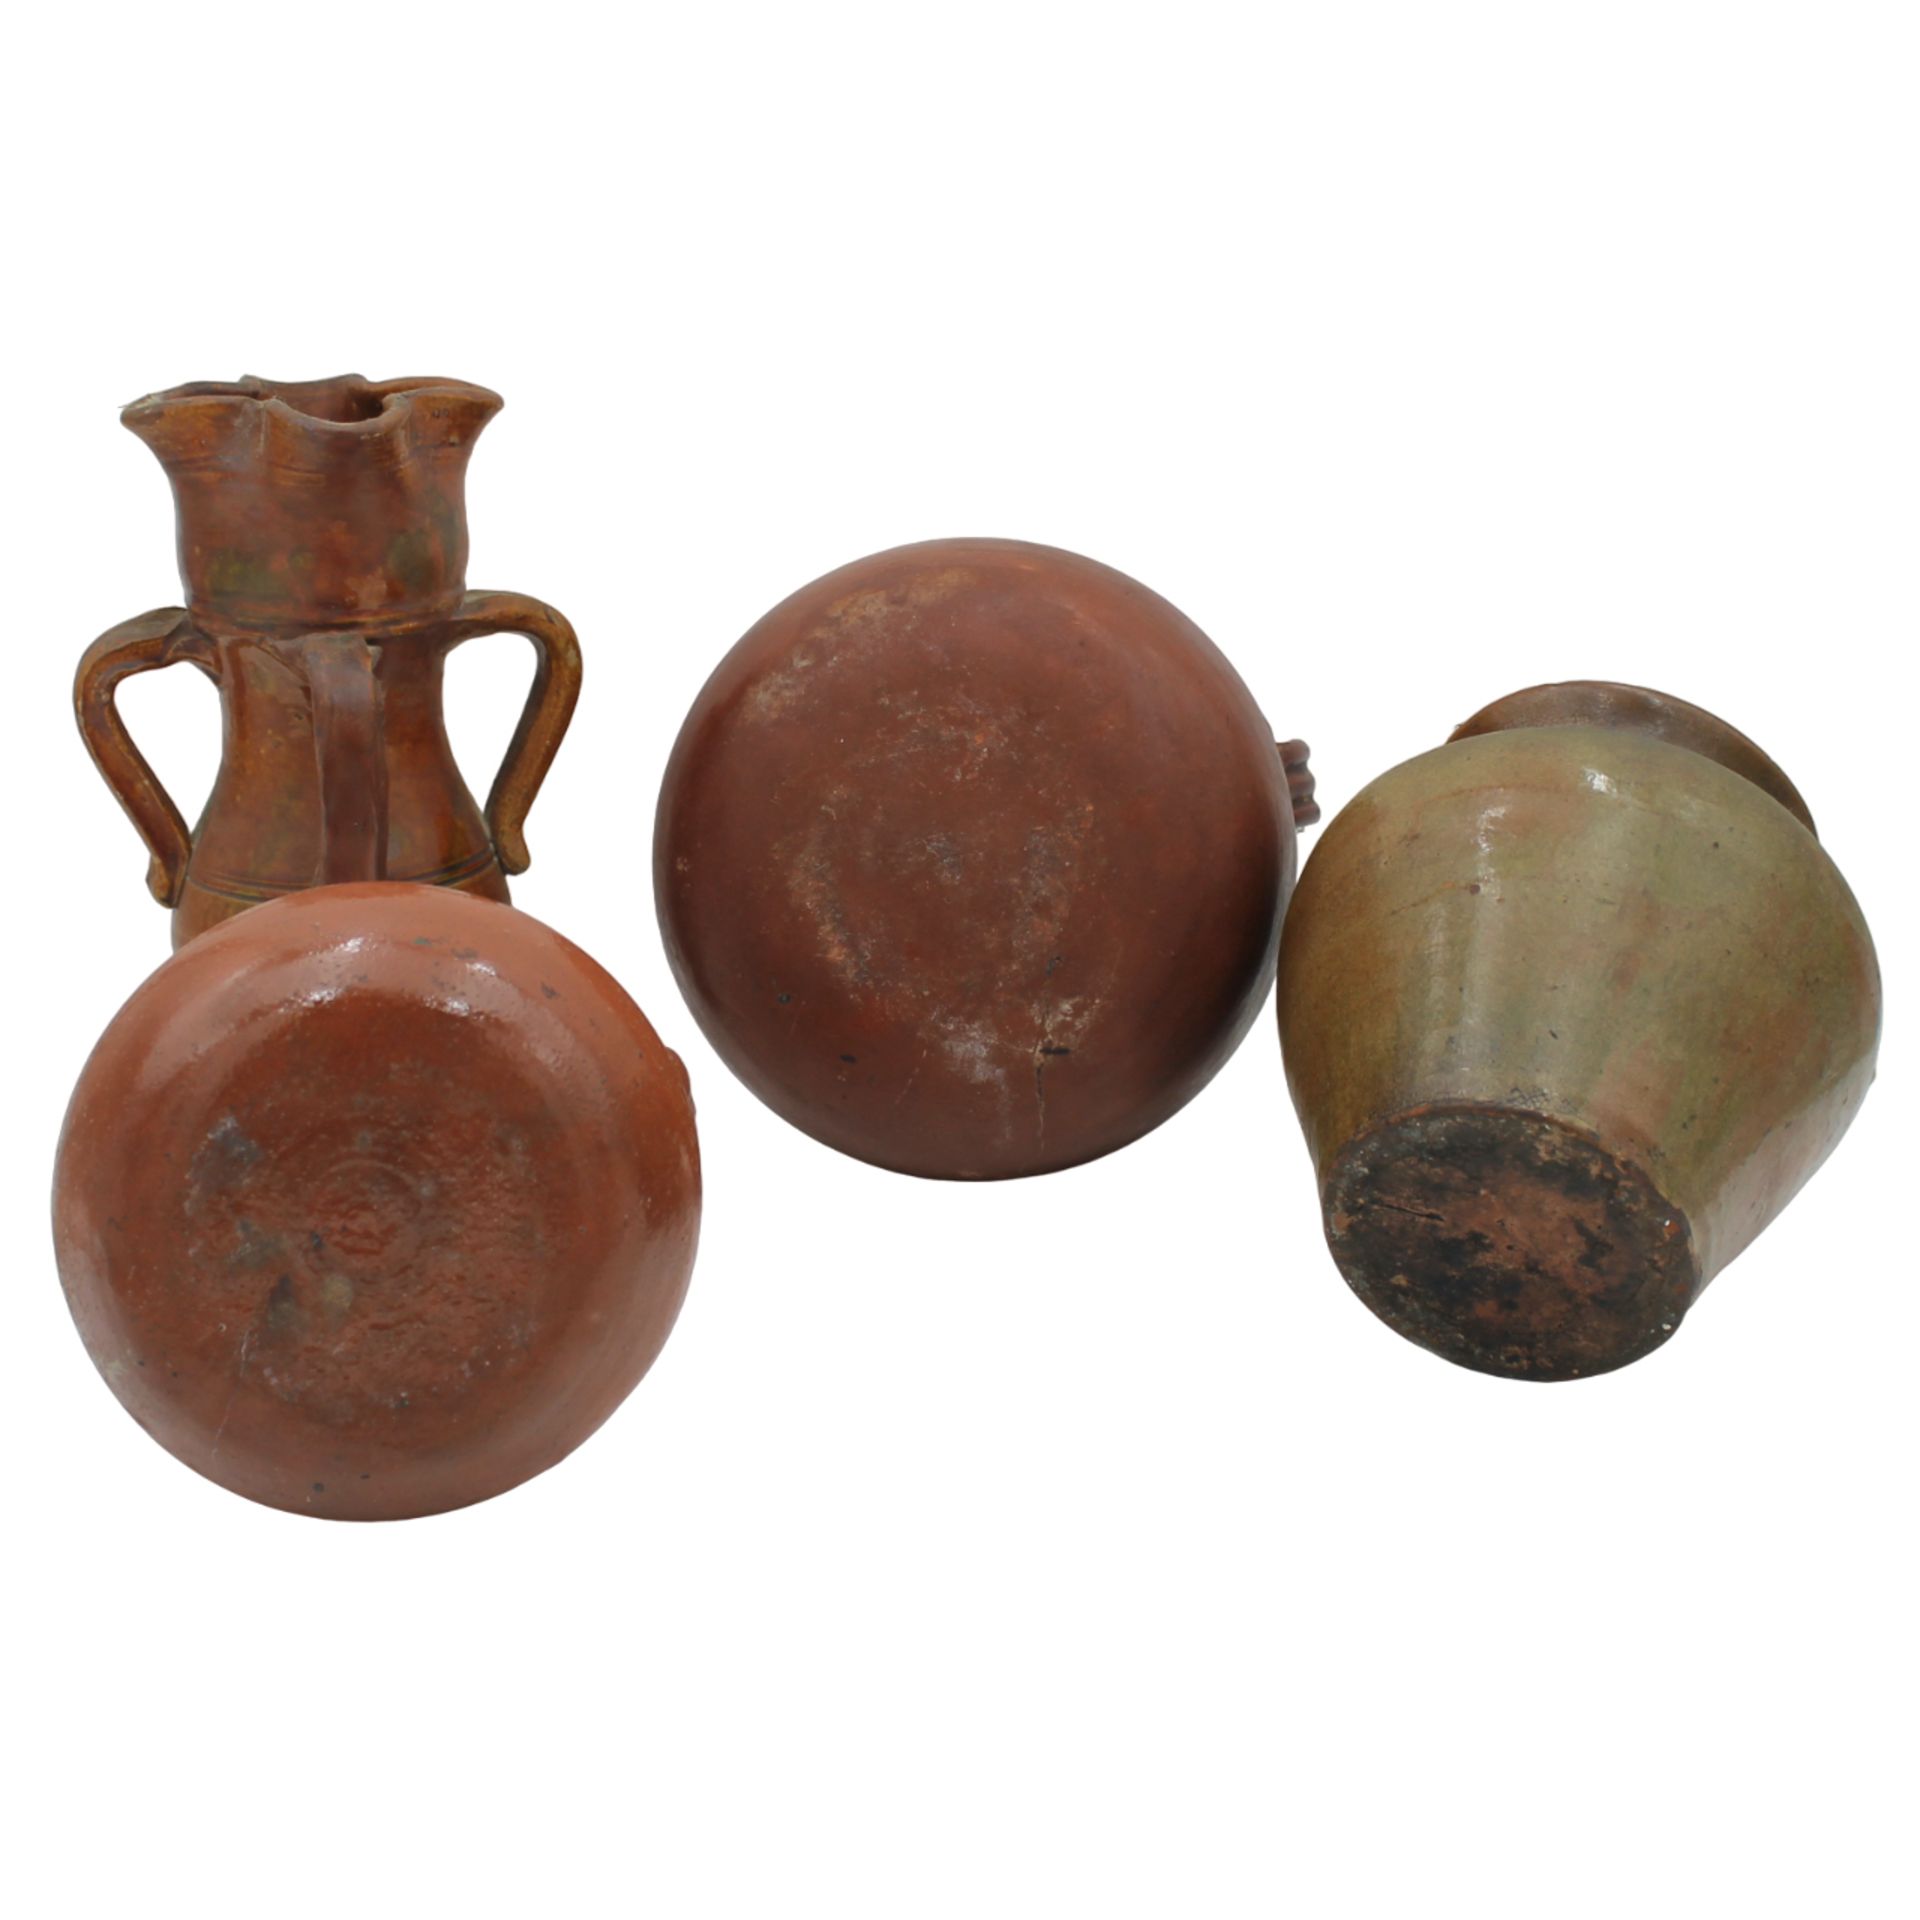 Quattro vasi - Four vases - Image 2 of 2